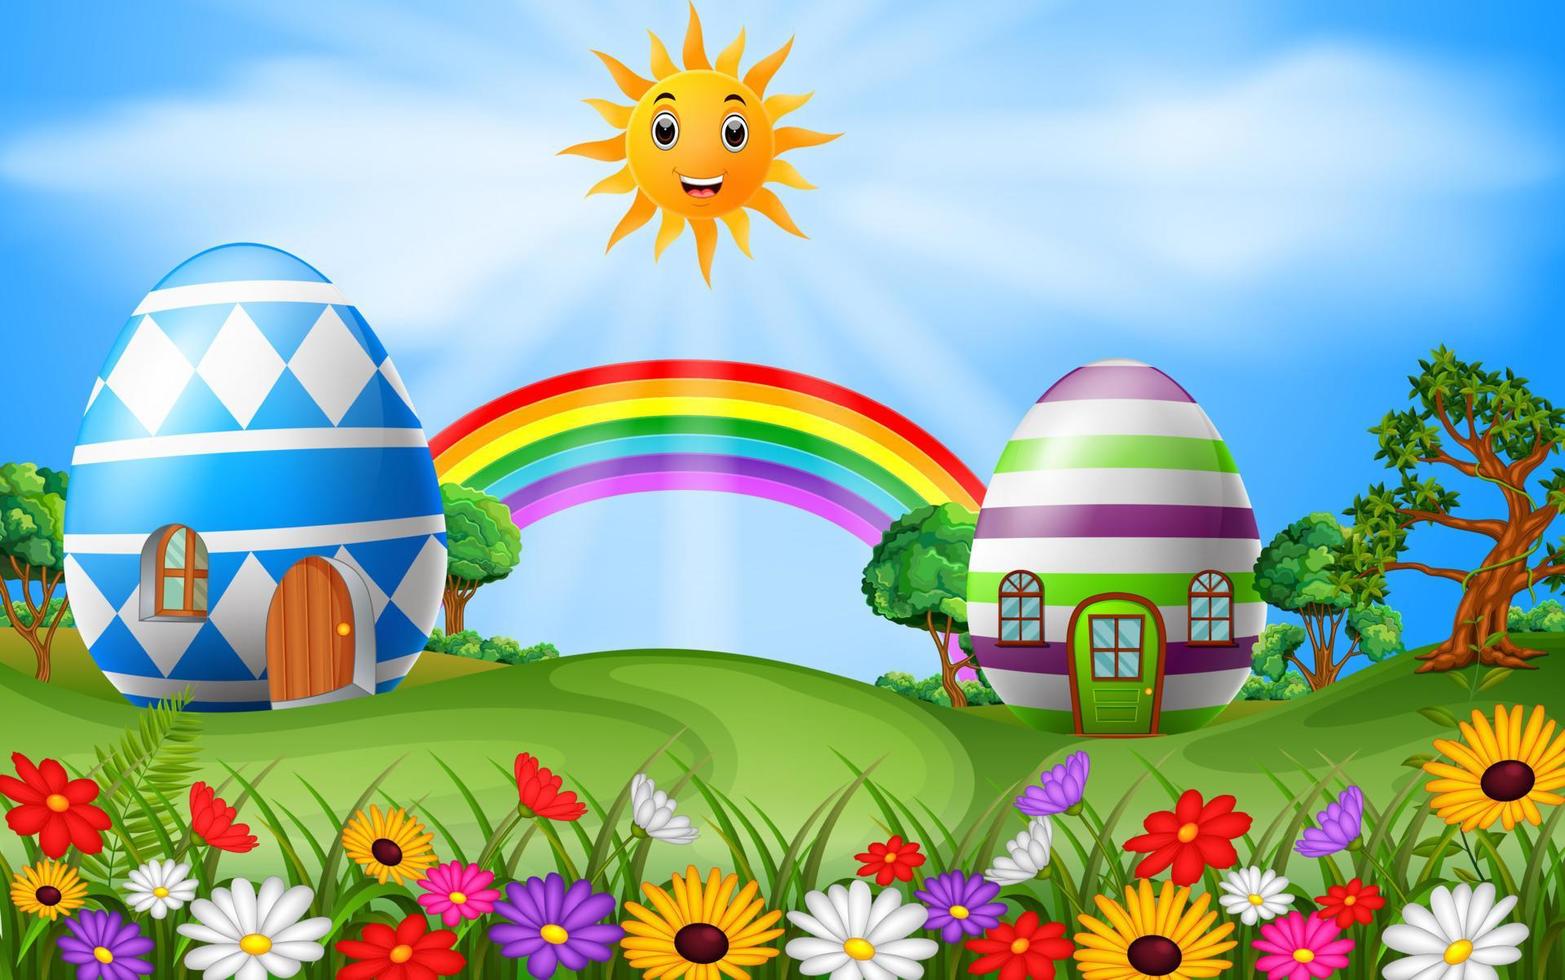 illustration de la maison des oeufs de pâques avec scène arc-en-ciel vecteur